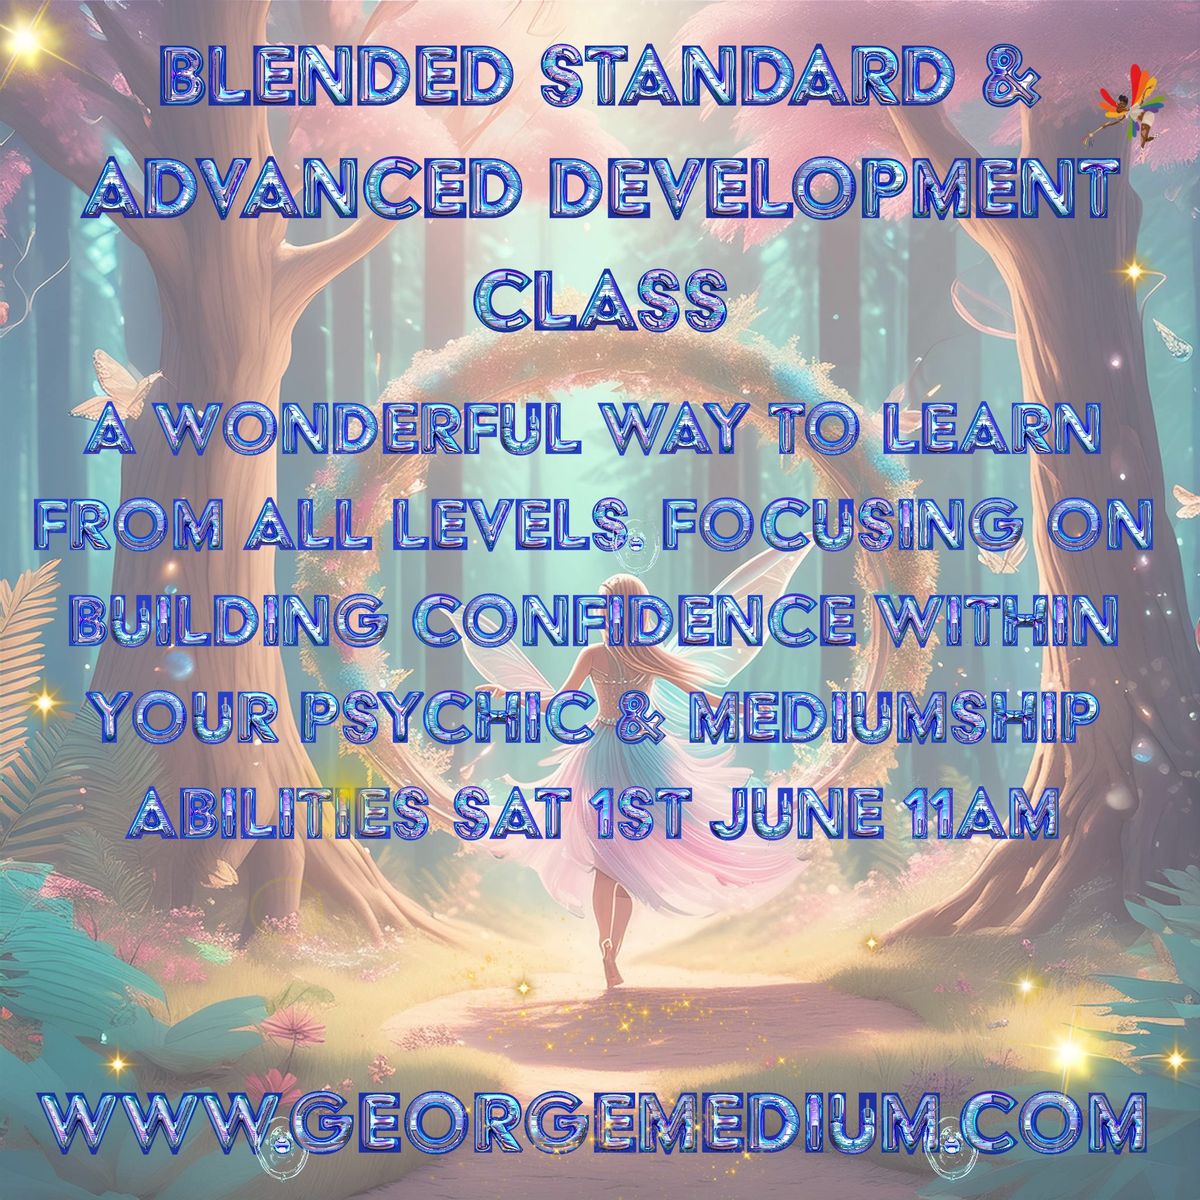 Blended Standard & Advanced Development Class